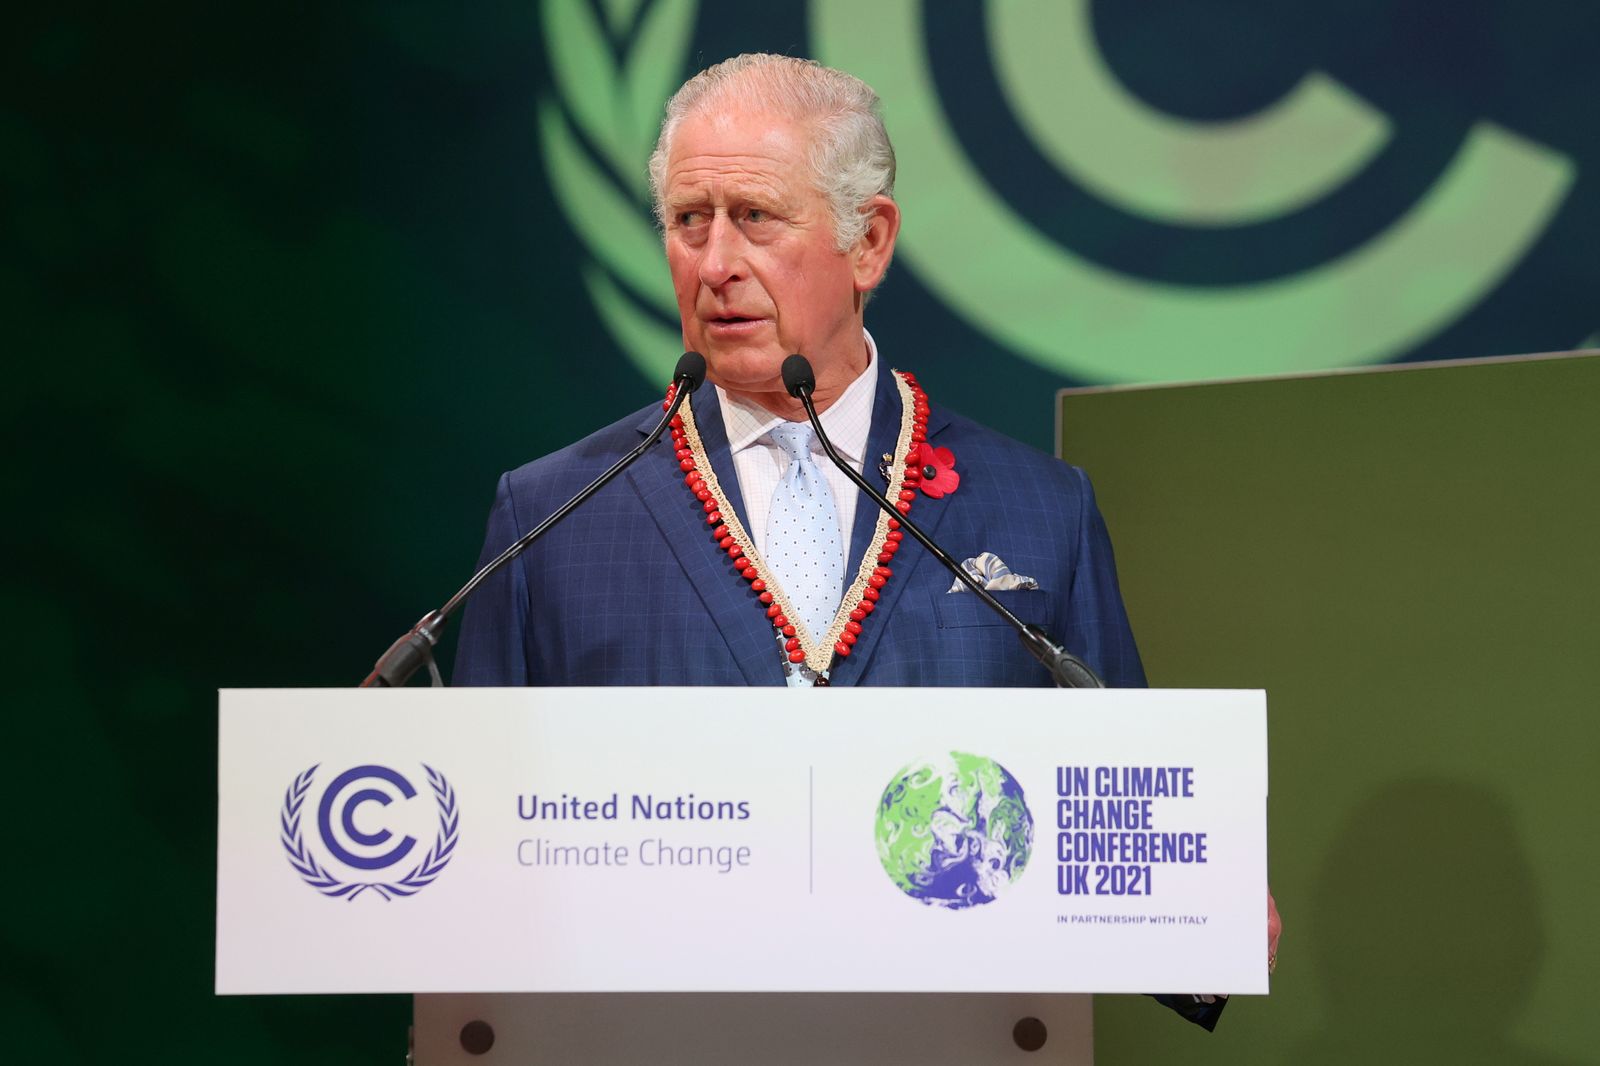 الأمير تشارلز حينها يلقي كلمة بقمة المناخ COP 26 في جلاسكو باسكتلندا - 2 نوفمبر 2021 - REUTERS